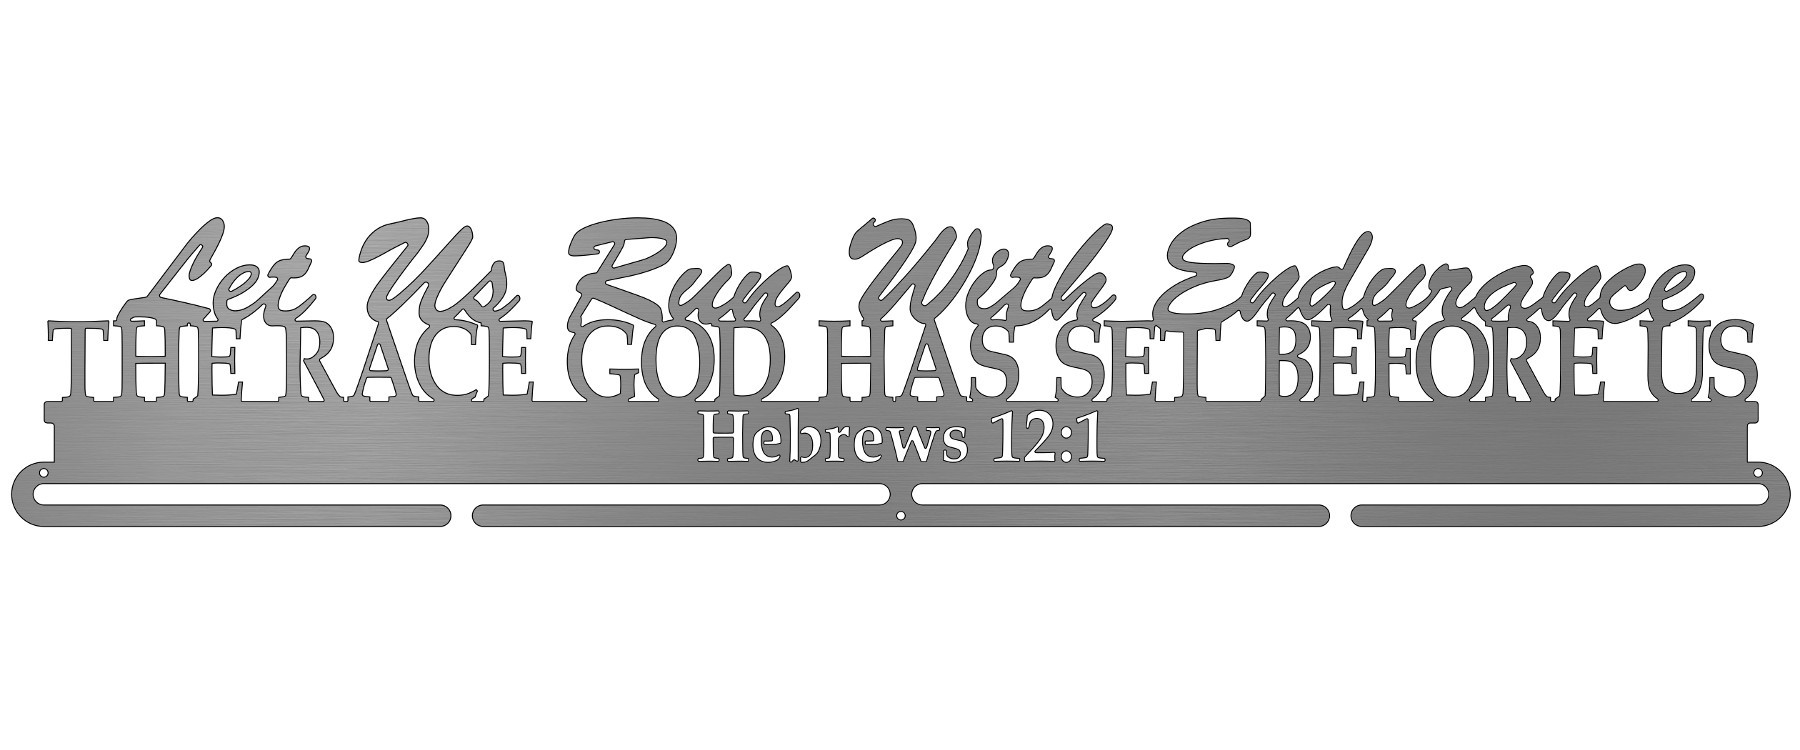 Hebrews 12:1 